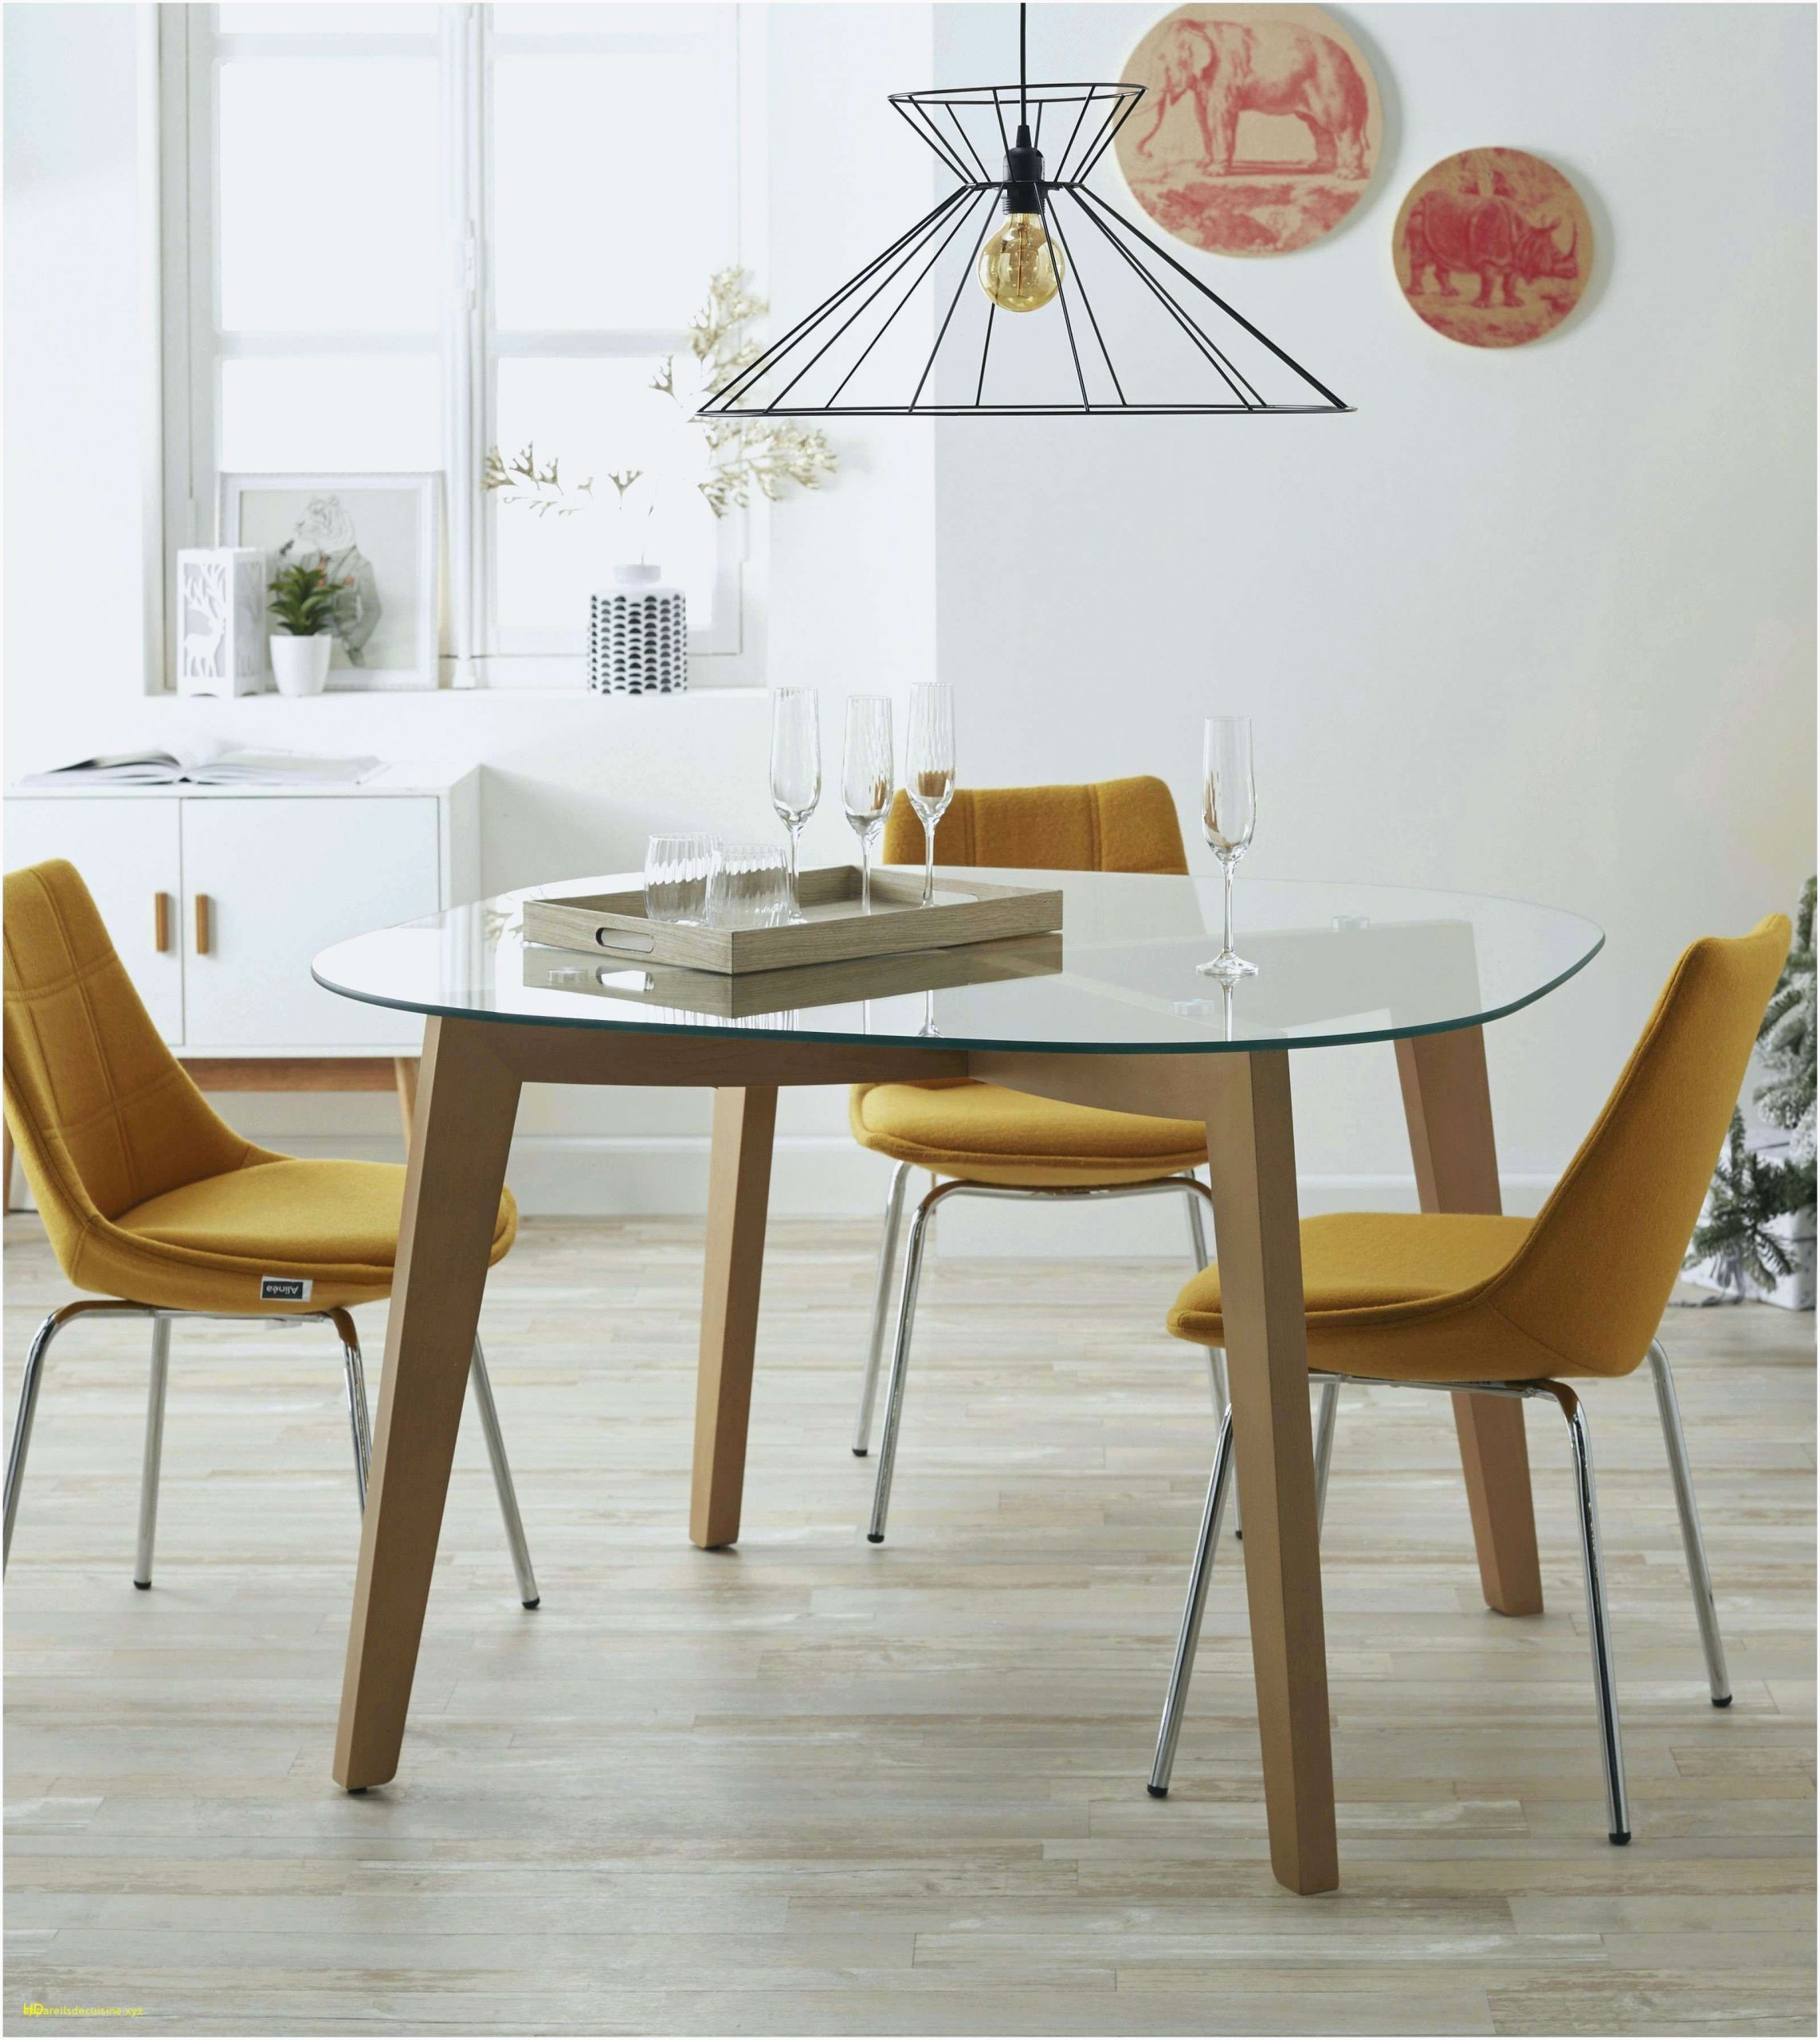 chaise haute de cuisine etonnant chaise haute cuisine design luxe chaise de cuisine alinea de chaise haute de cuisine